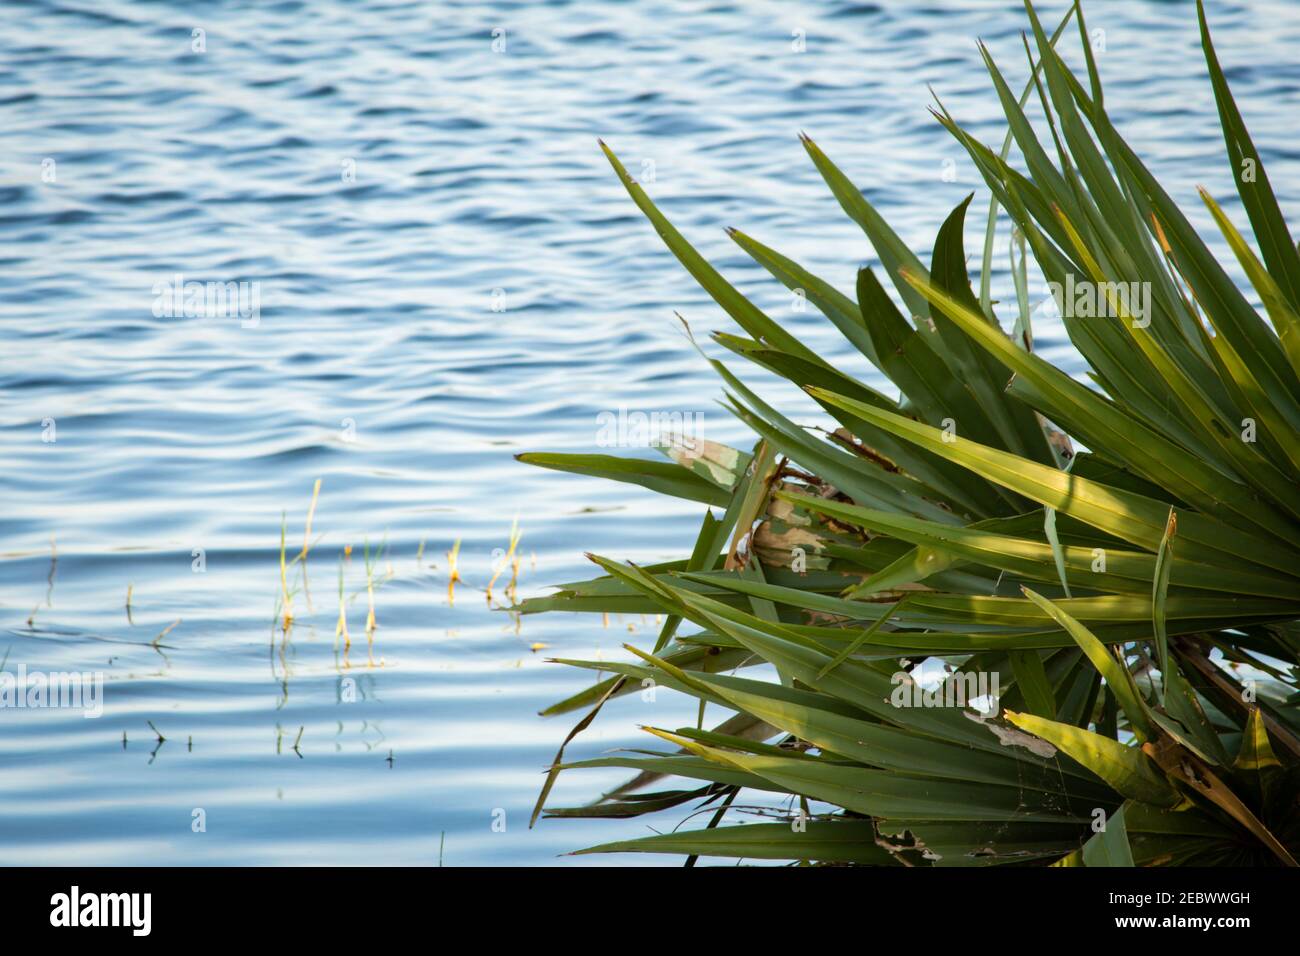 Vista delle palme di palmyra mezzo sommerso con le acque del fiume Palar, Tamil Nadu, India. Messa a fuoco impostata sulle foglie di palmyra Foto Stock